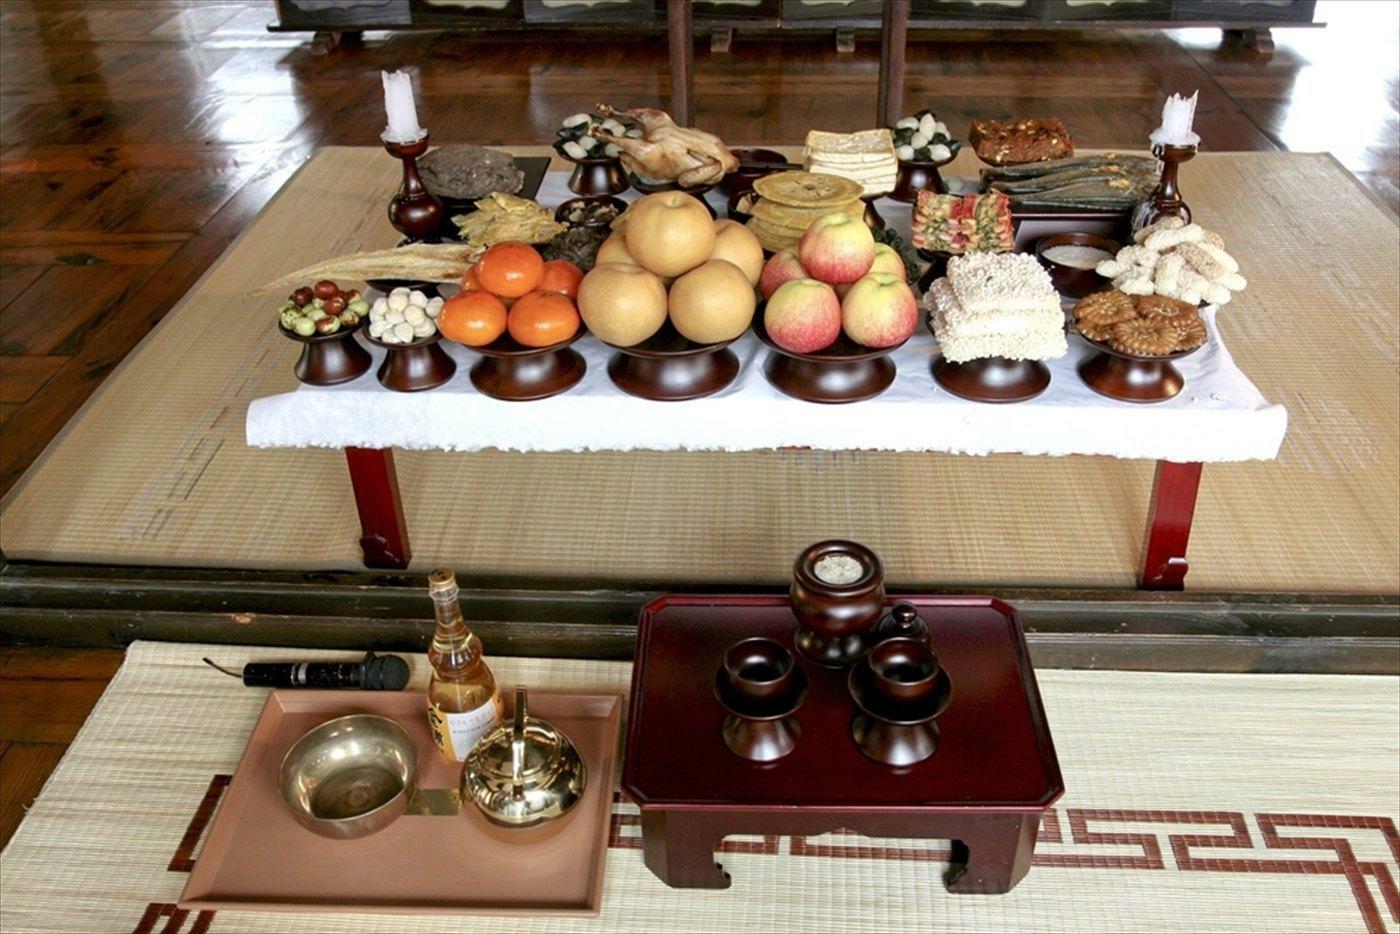 出典:flickr.com - Republic of Korea 先祖礼拝儀式のためのテーブルセッティング（写真右端が薬果）